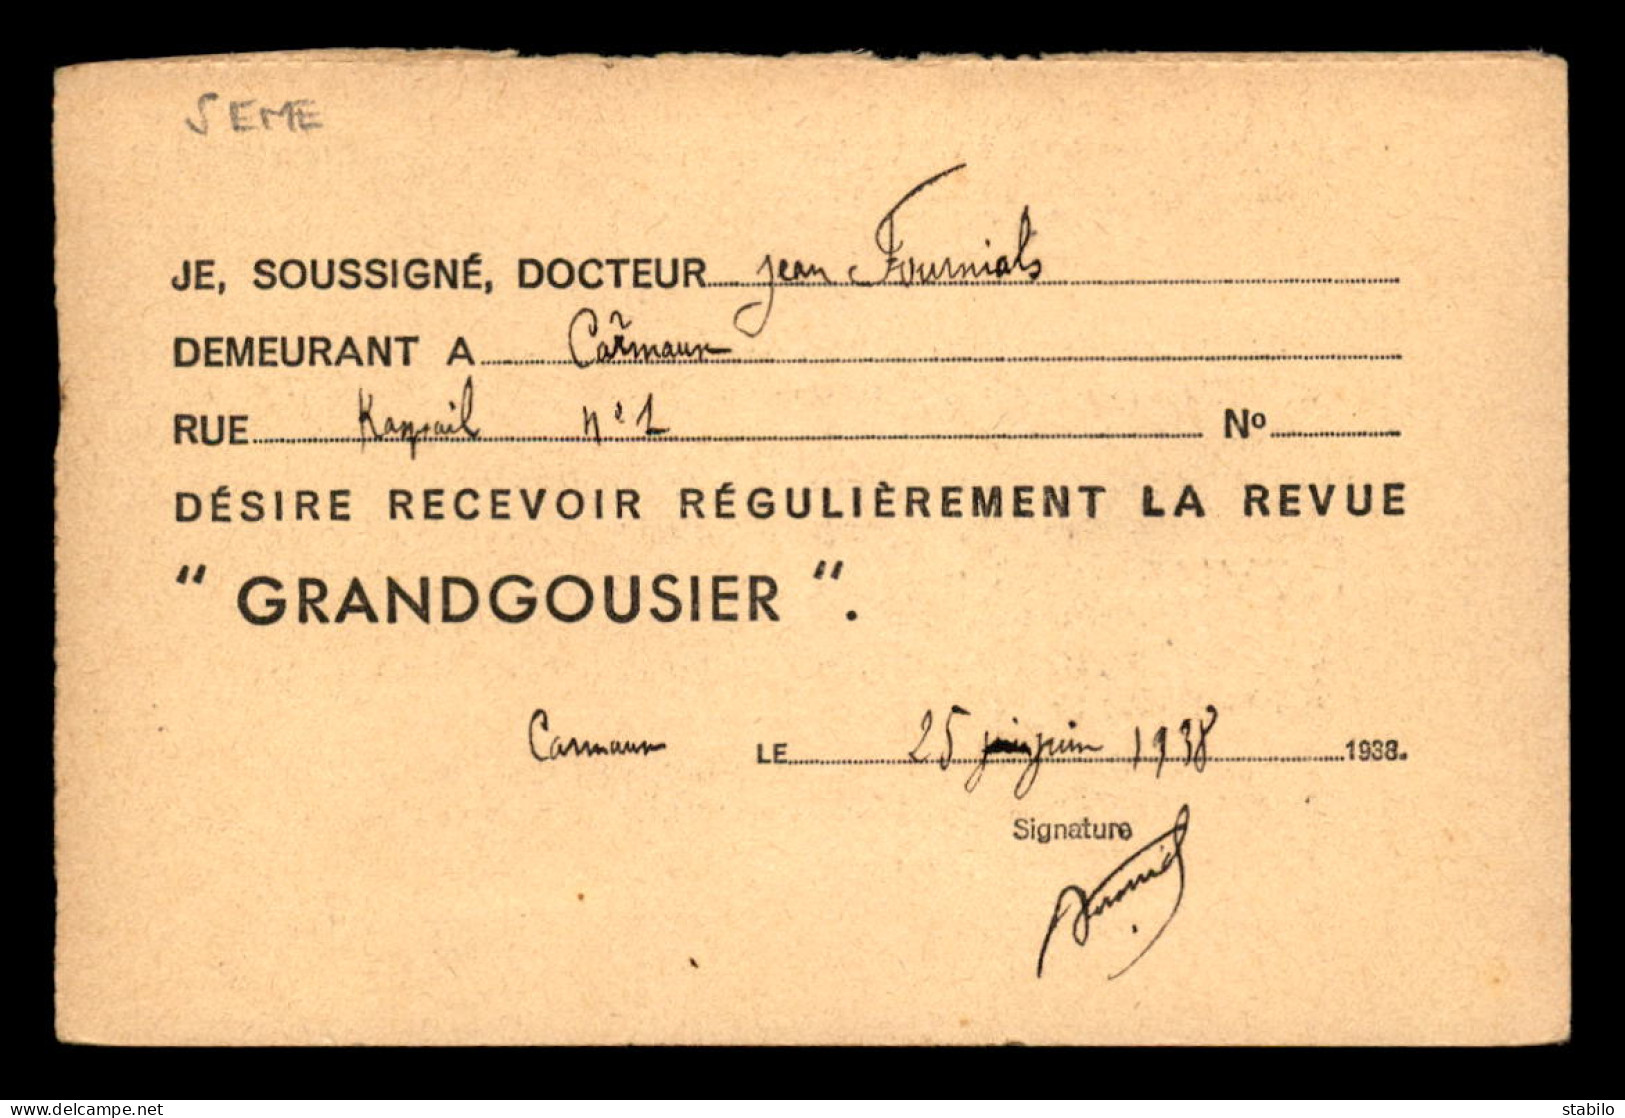 75 - PARIS 5EME - CARTE D'ABONNEMENT - REVUE GRANDGOUSIER, 15 RUE DU SOMMERARD - Paris (05)